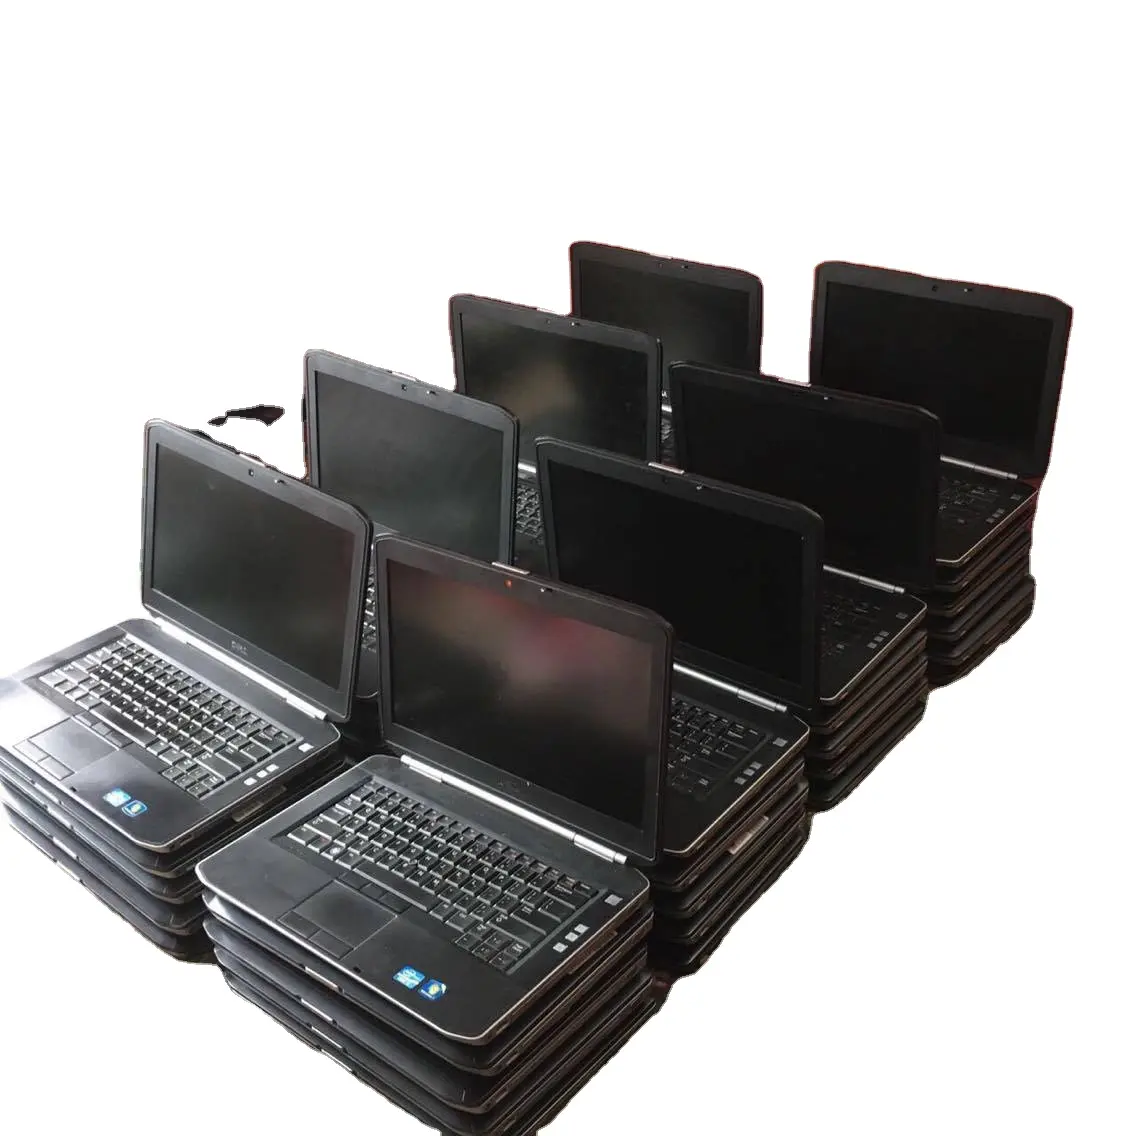 Großhandel überholte gebrauchte Laptops Desktop-Computer verwendet Elektronik Desktop-Computer verwendet Laptops Notebooks für Studenten